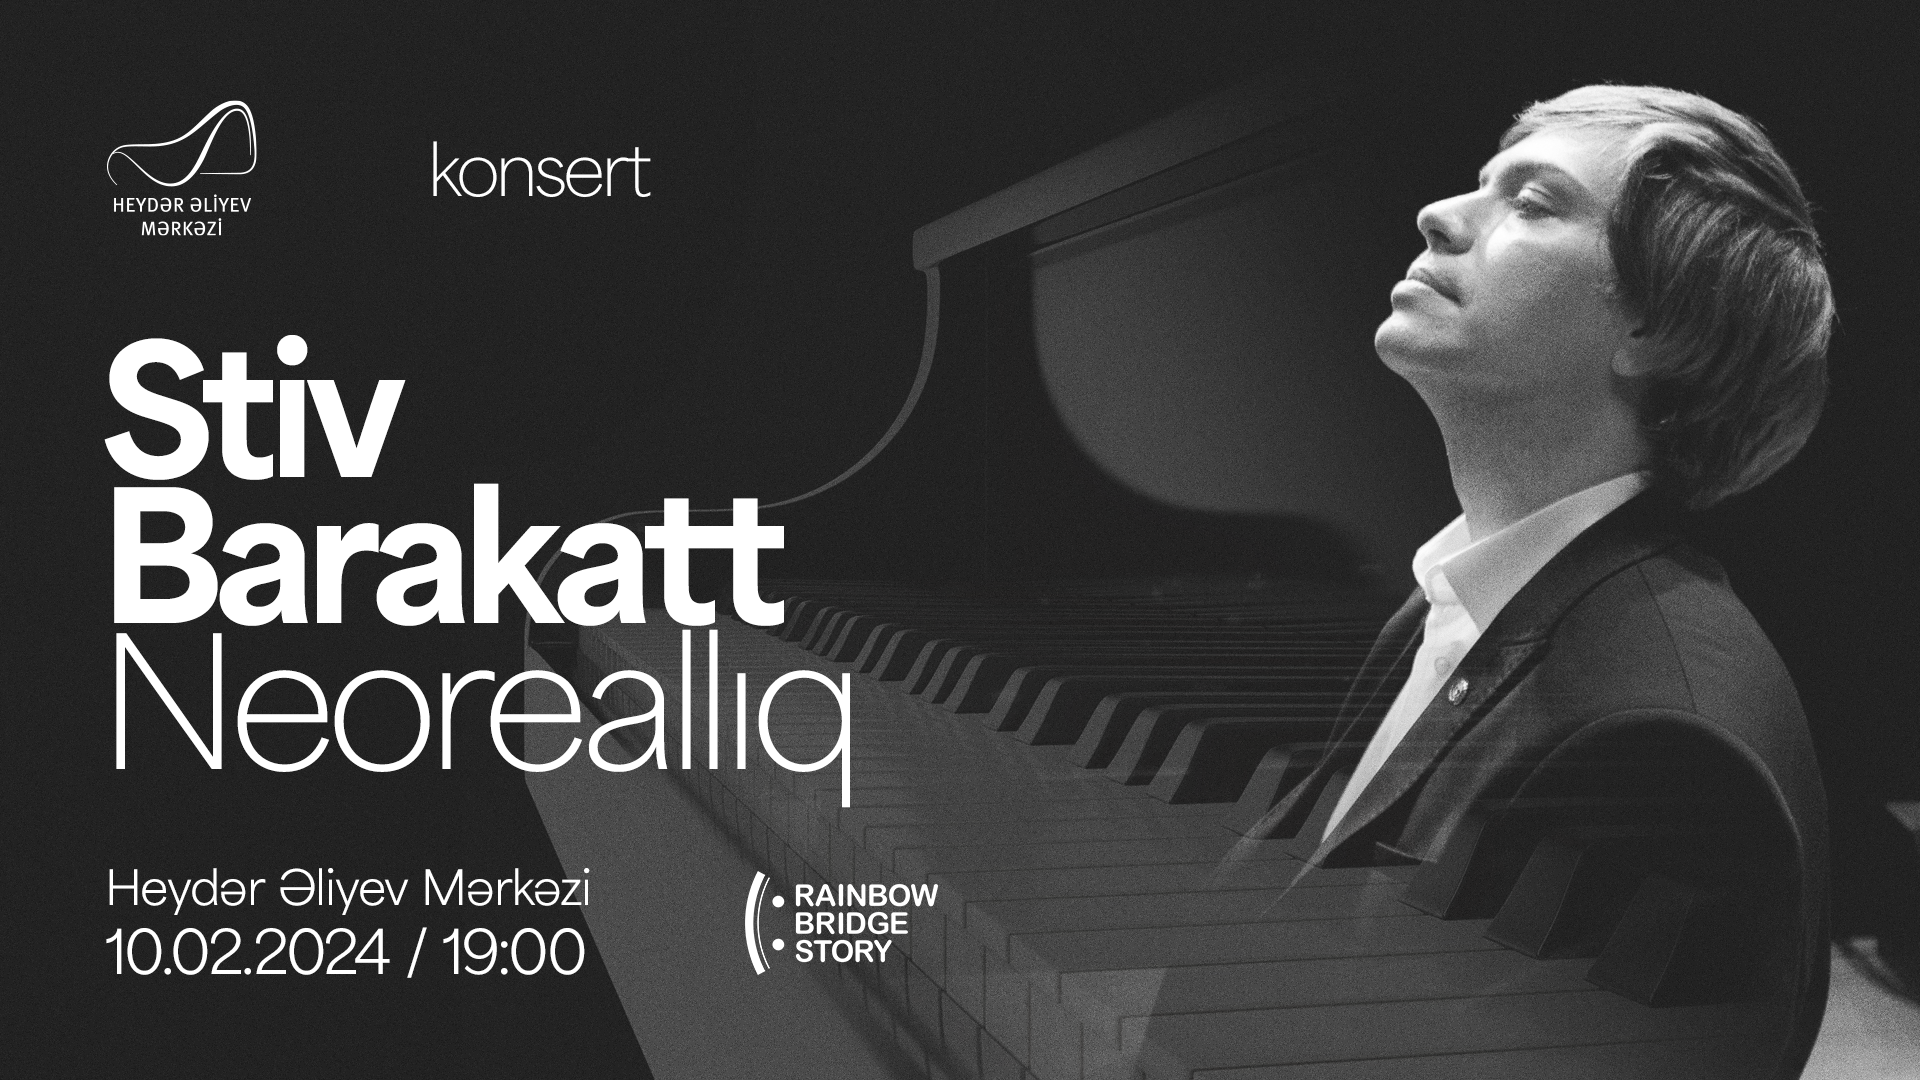 Concert of world famous Steve Barakatt to take place in Baku